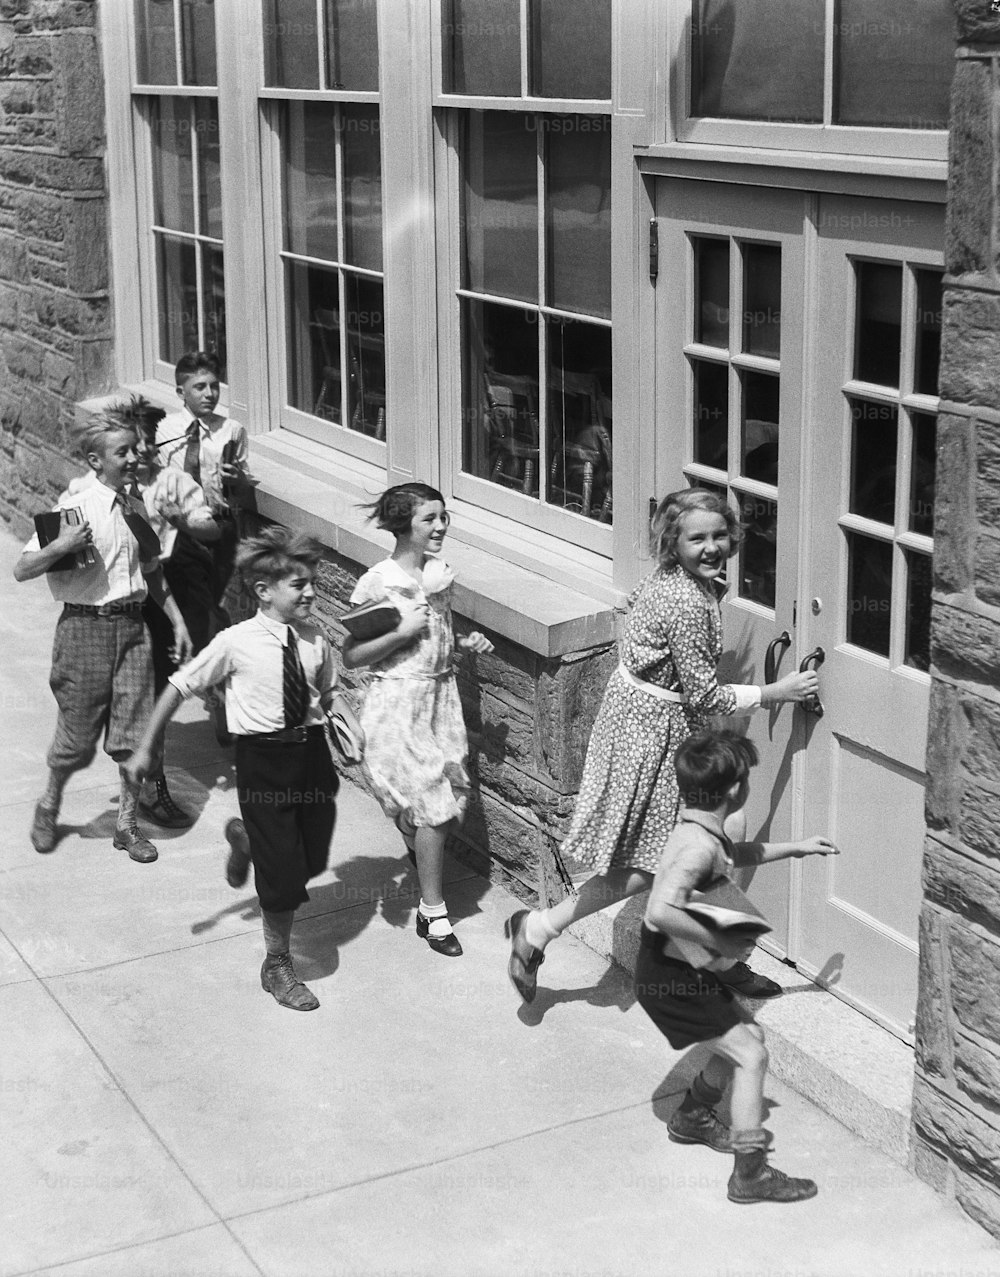 ESTADOS UNIDOS - POR VOLTA DE 1930: Sete crianças carregando livros, prestes a entrar na escola.